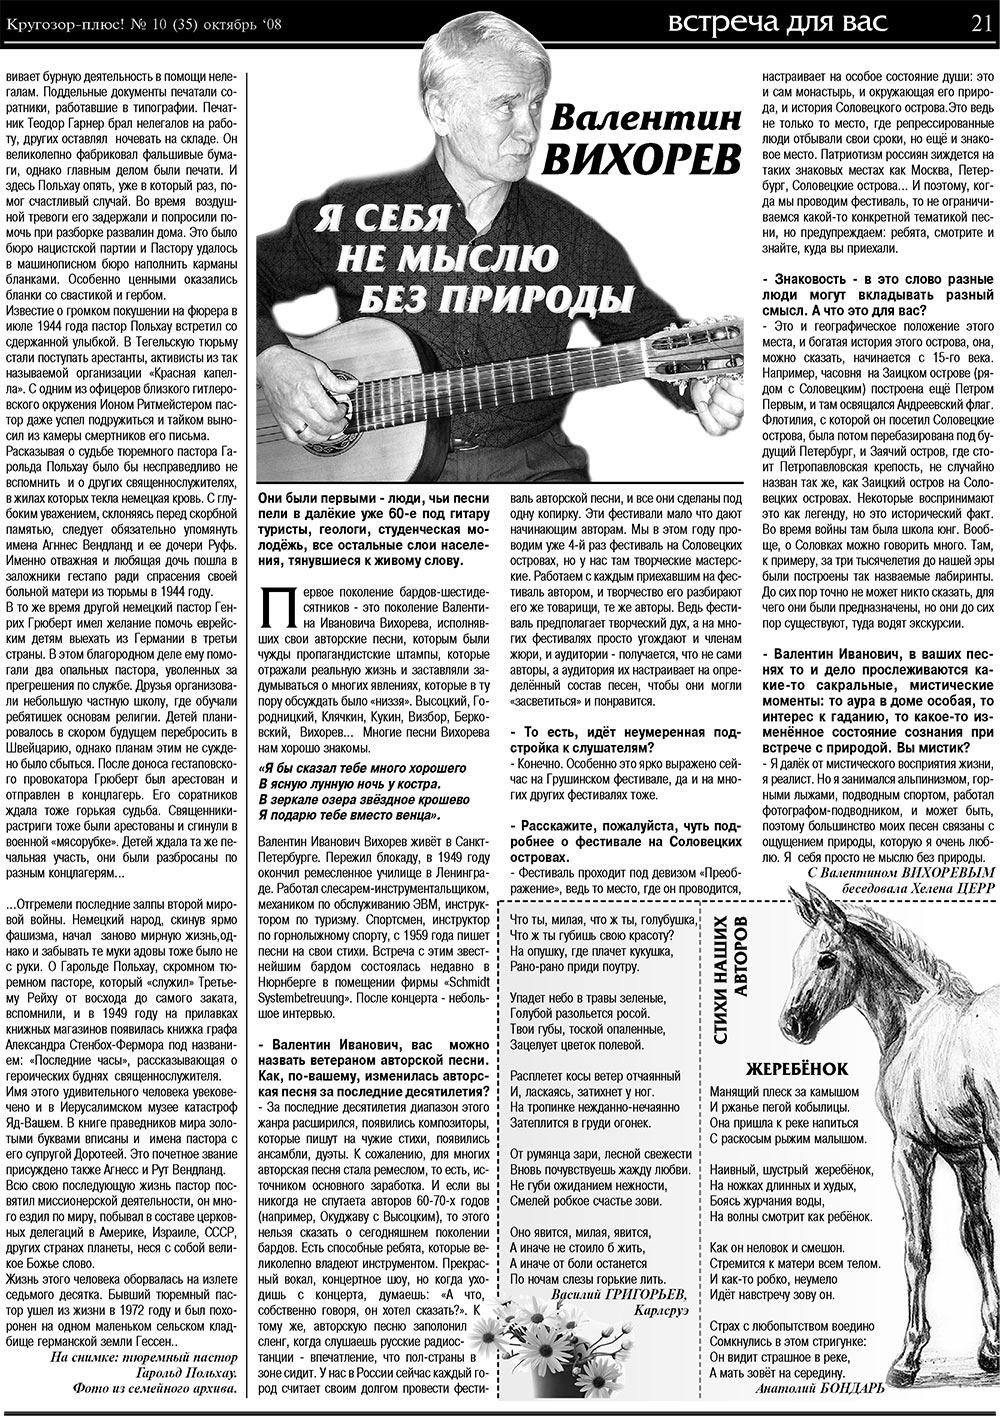 Кругозор плюс!, газета. 2008 №10 стр.21